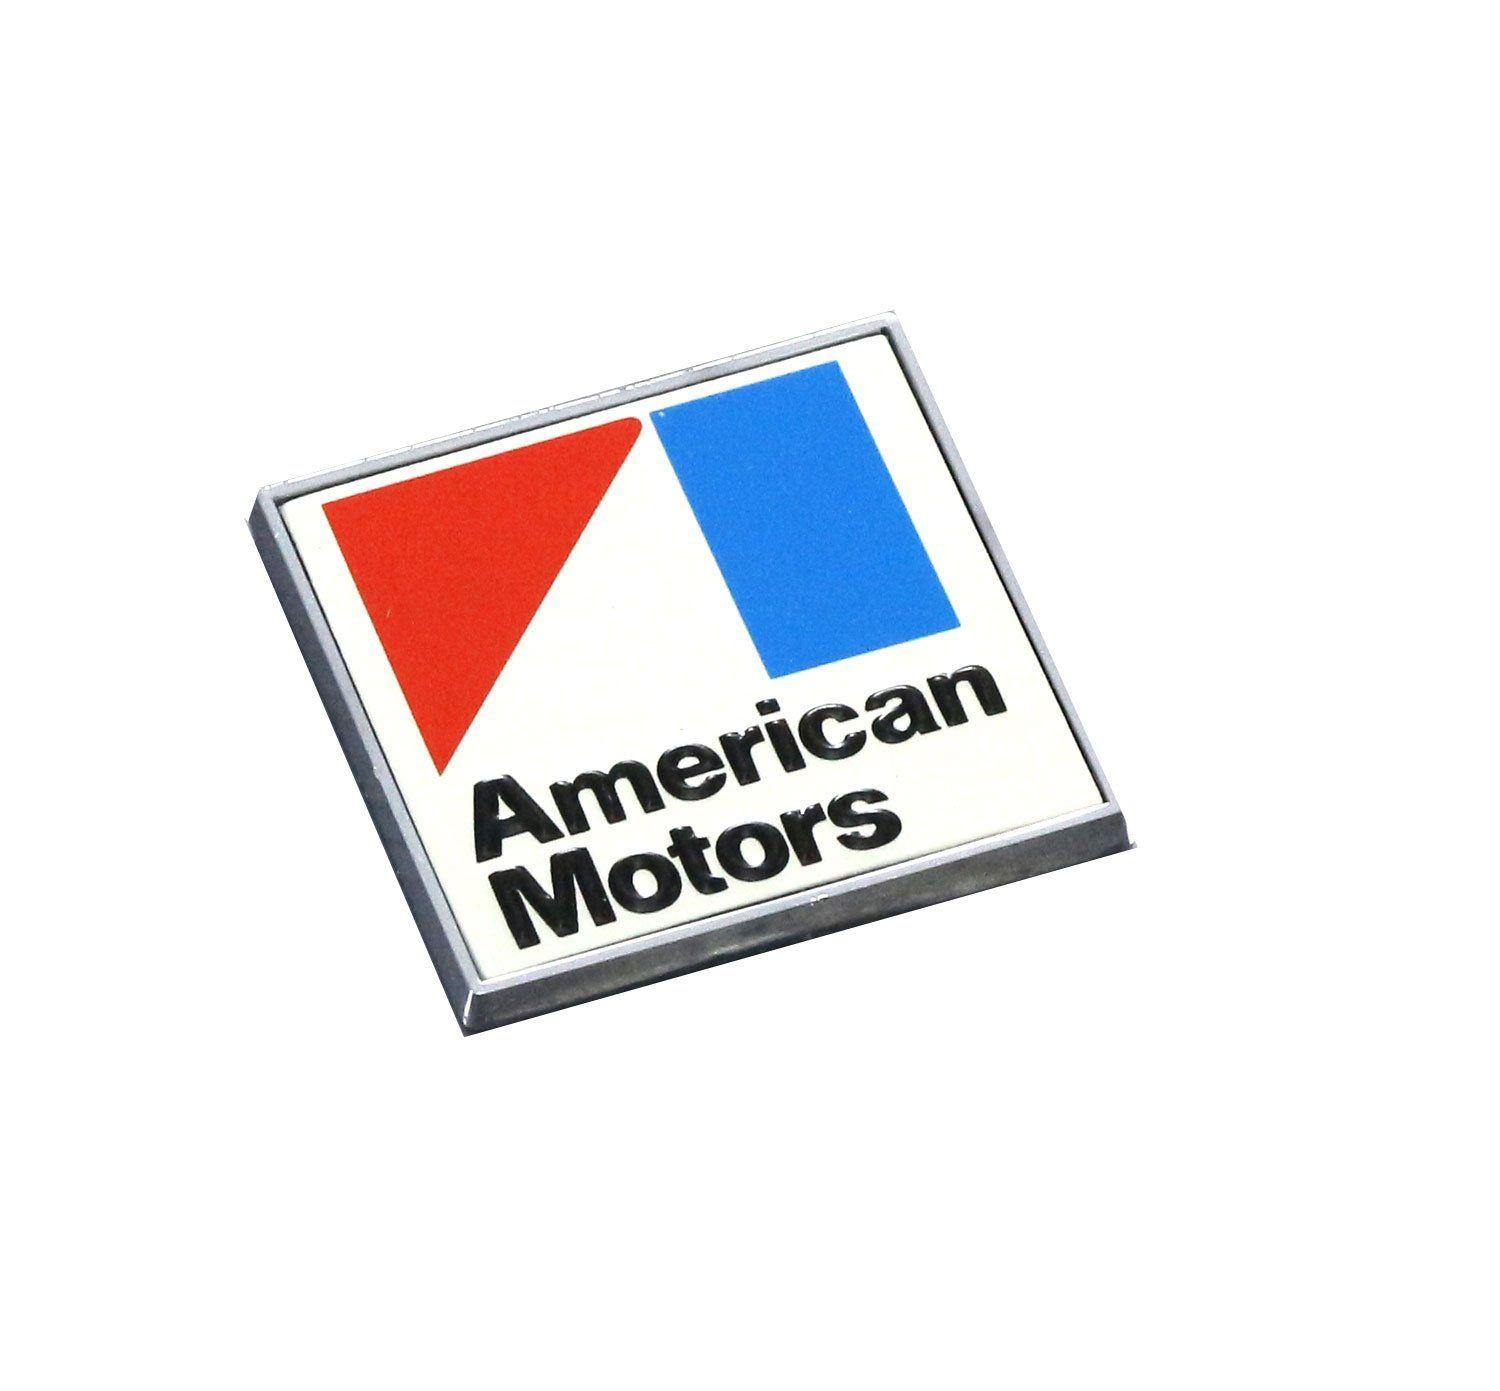 American Motors Logo - 1970 Late - 1971 American Motors Square Rear Deck Emblem - Red ...